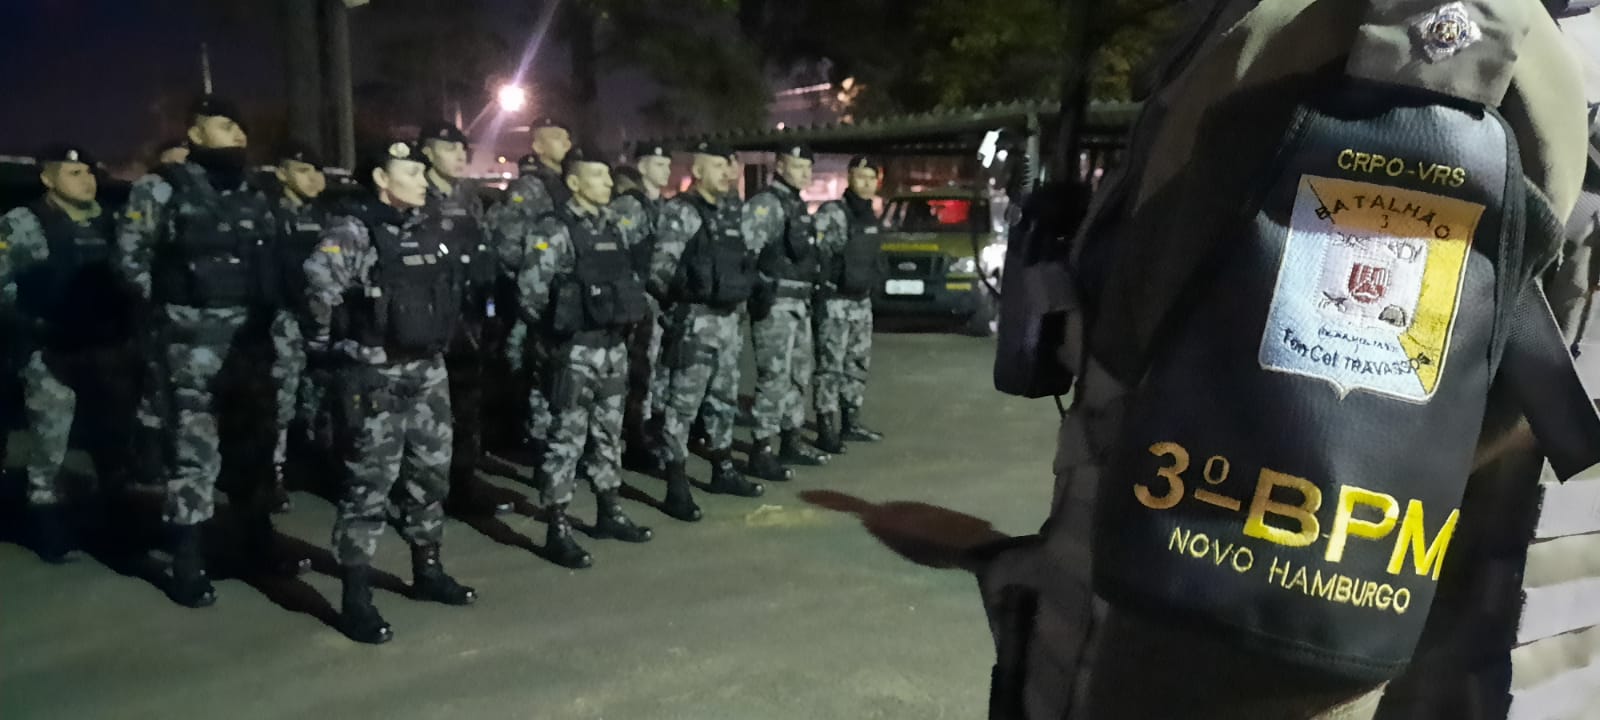 Brigada Militar, realiza ações repressivas como resposta aos últimos crimes em Novo Hamburgo